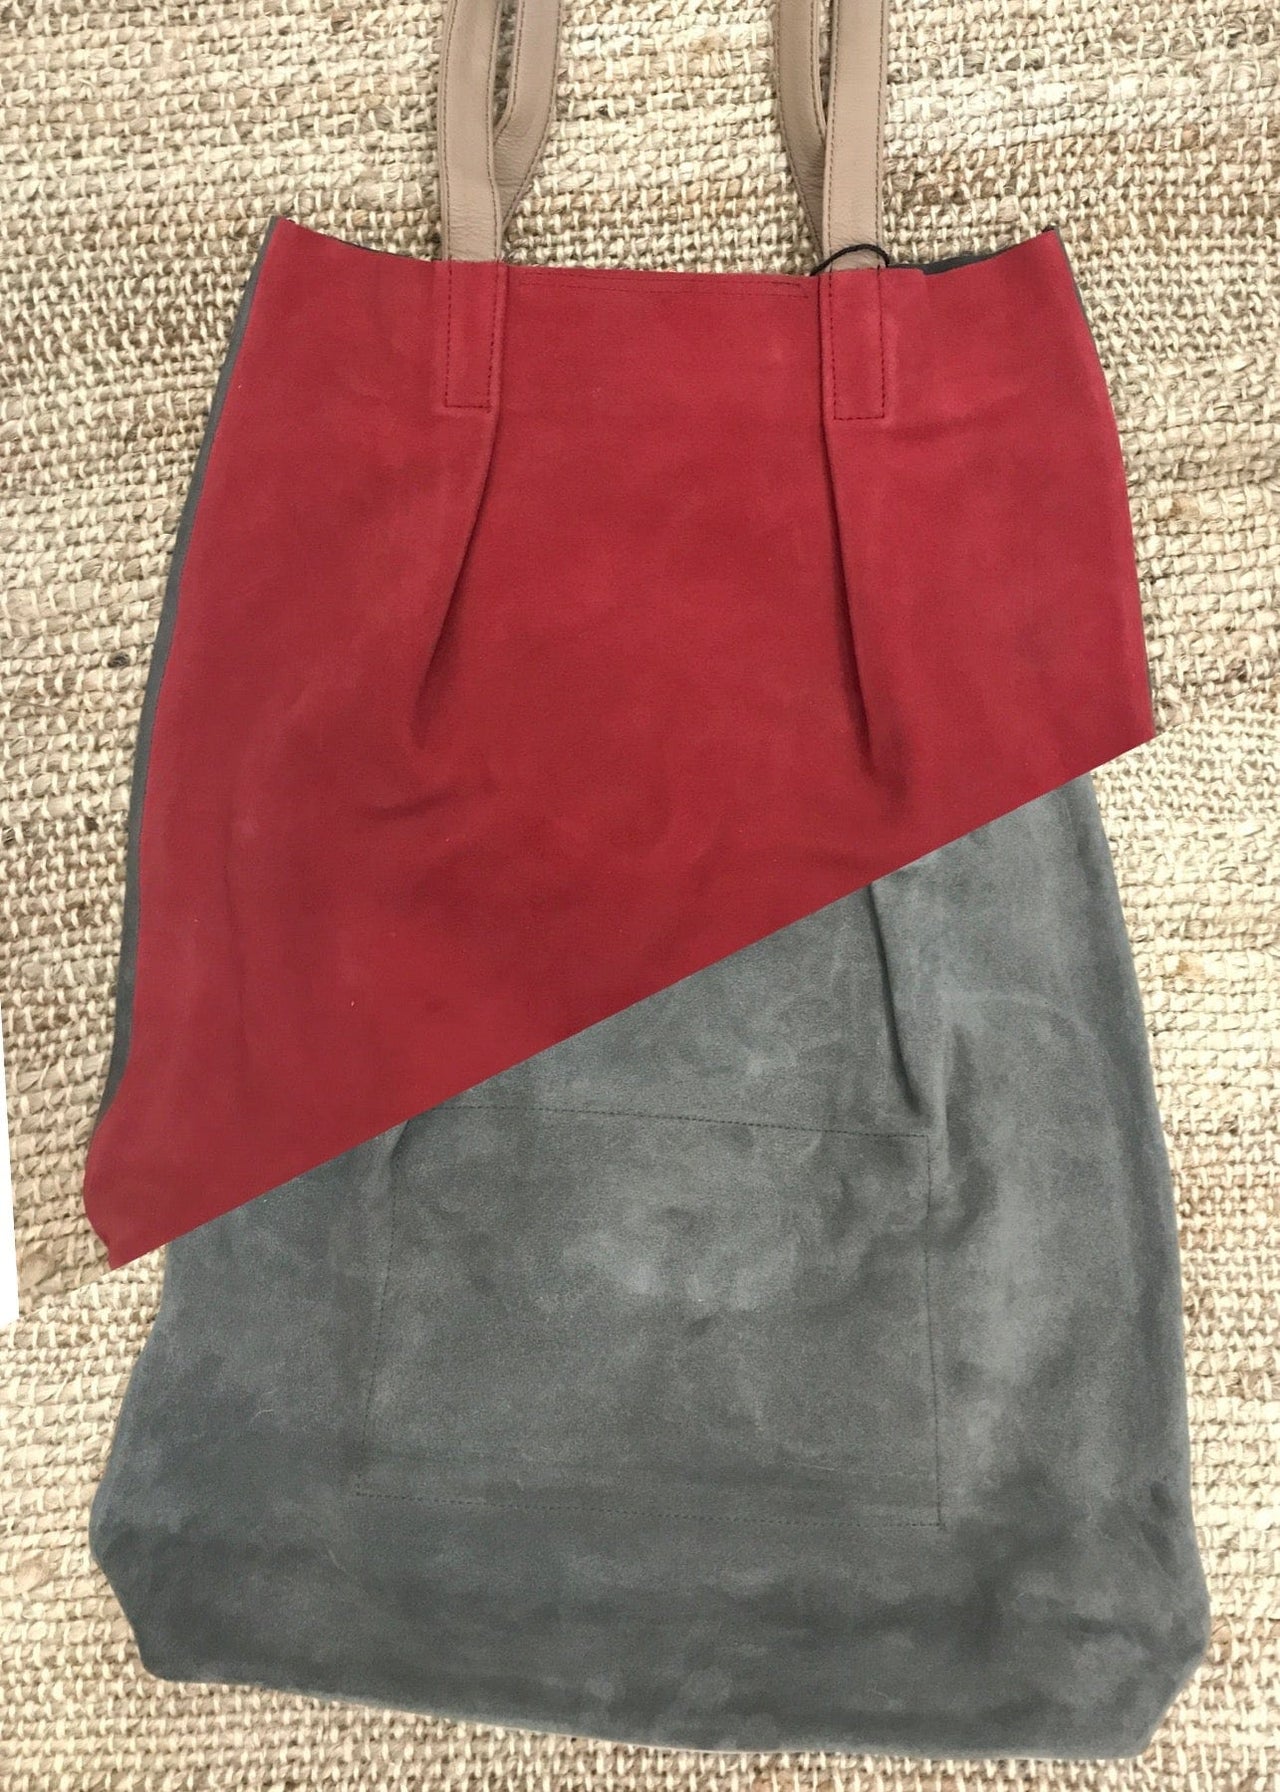 Sophia Shopper Suede Shoulder Bag Soruka Bag Red/Gray